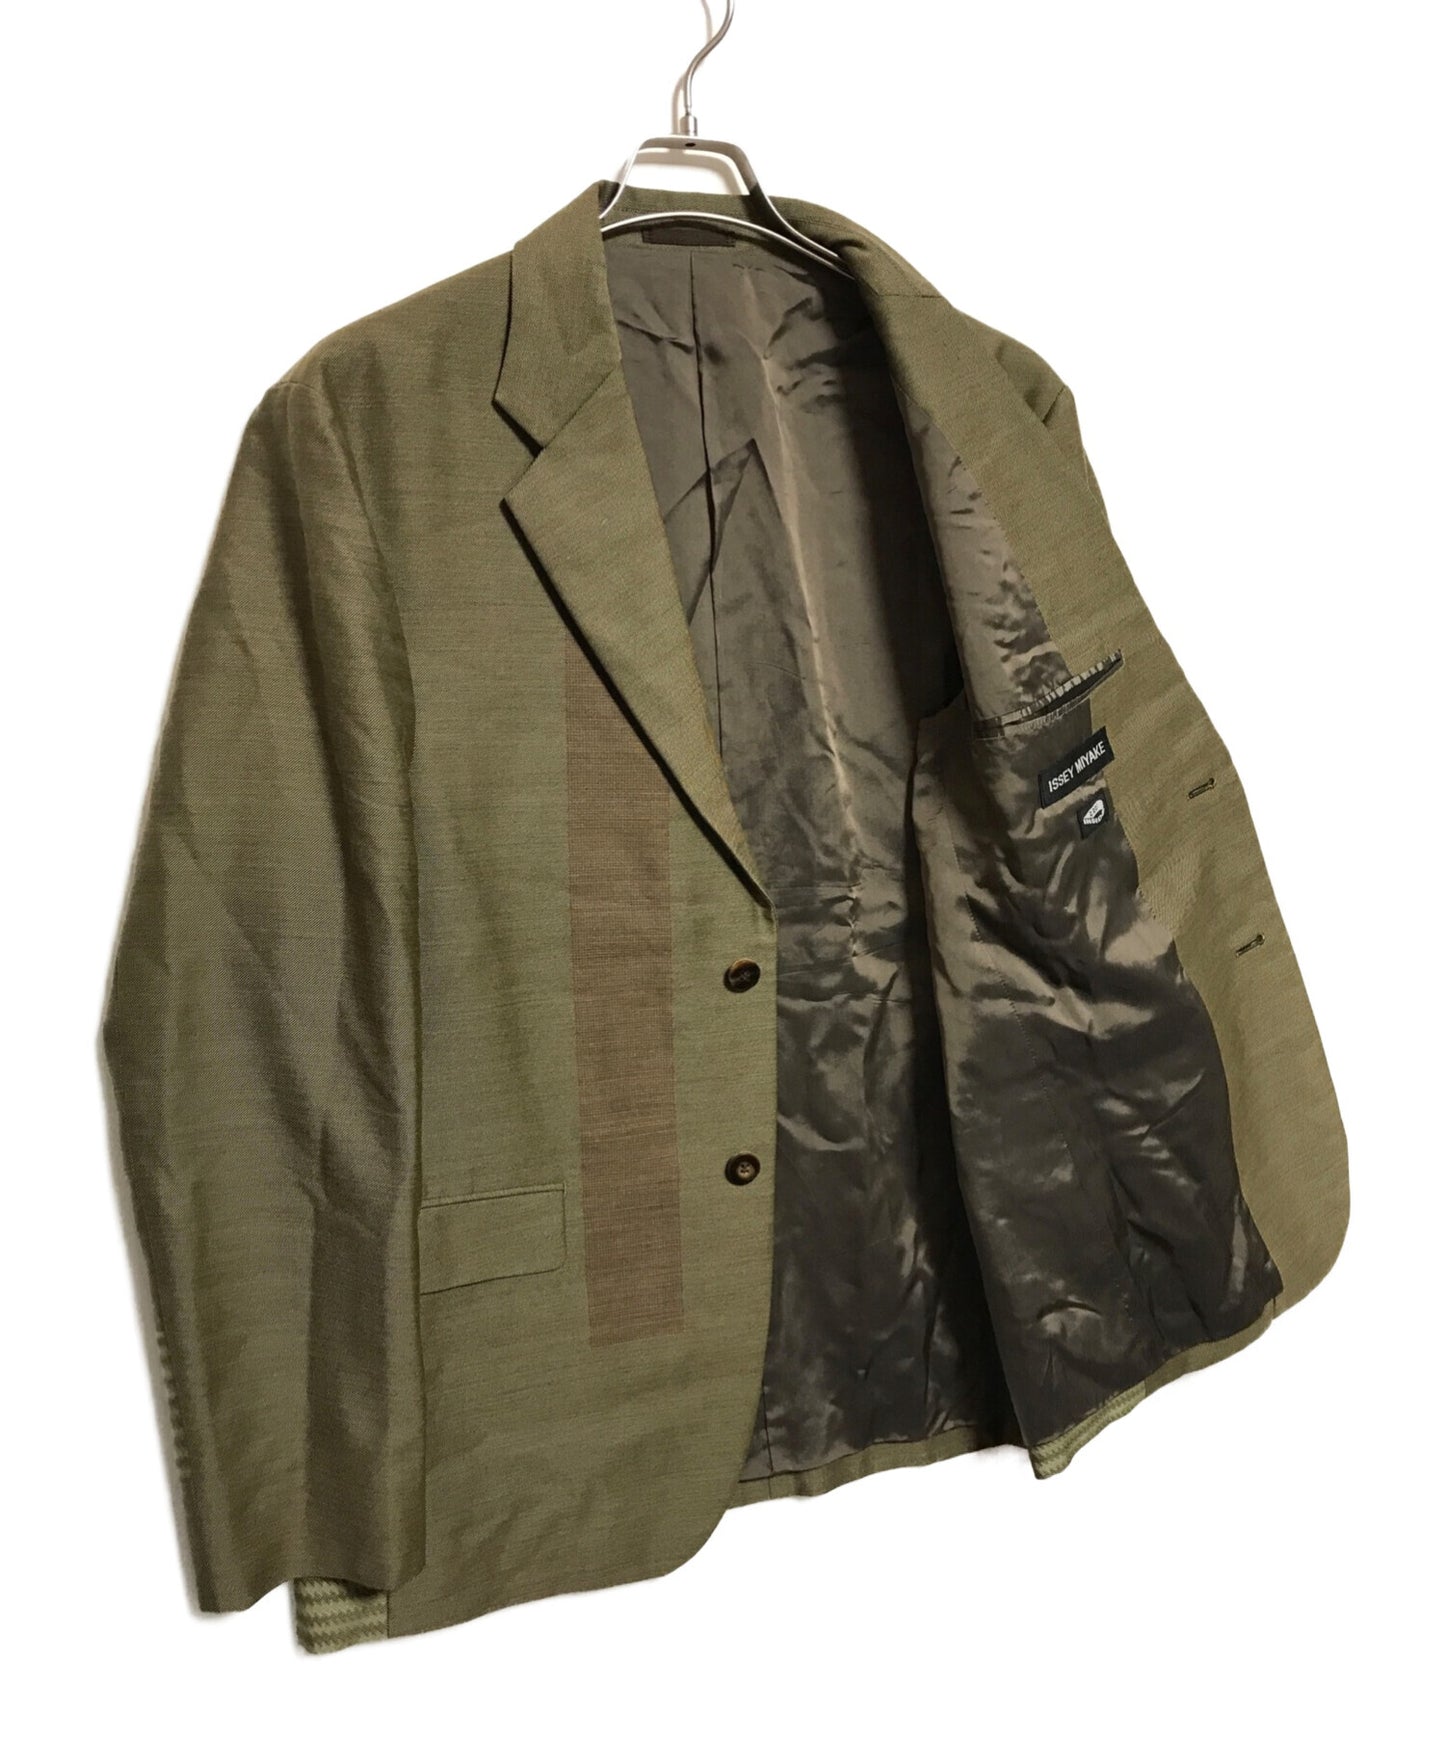 Issey Miyake Design Jacket Tailored Me93fd065